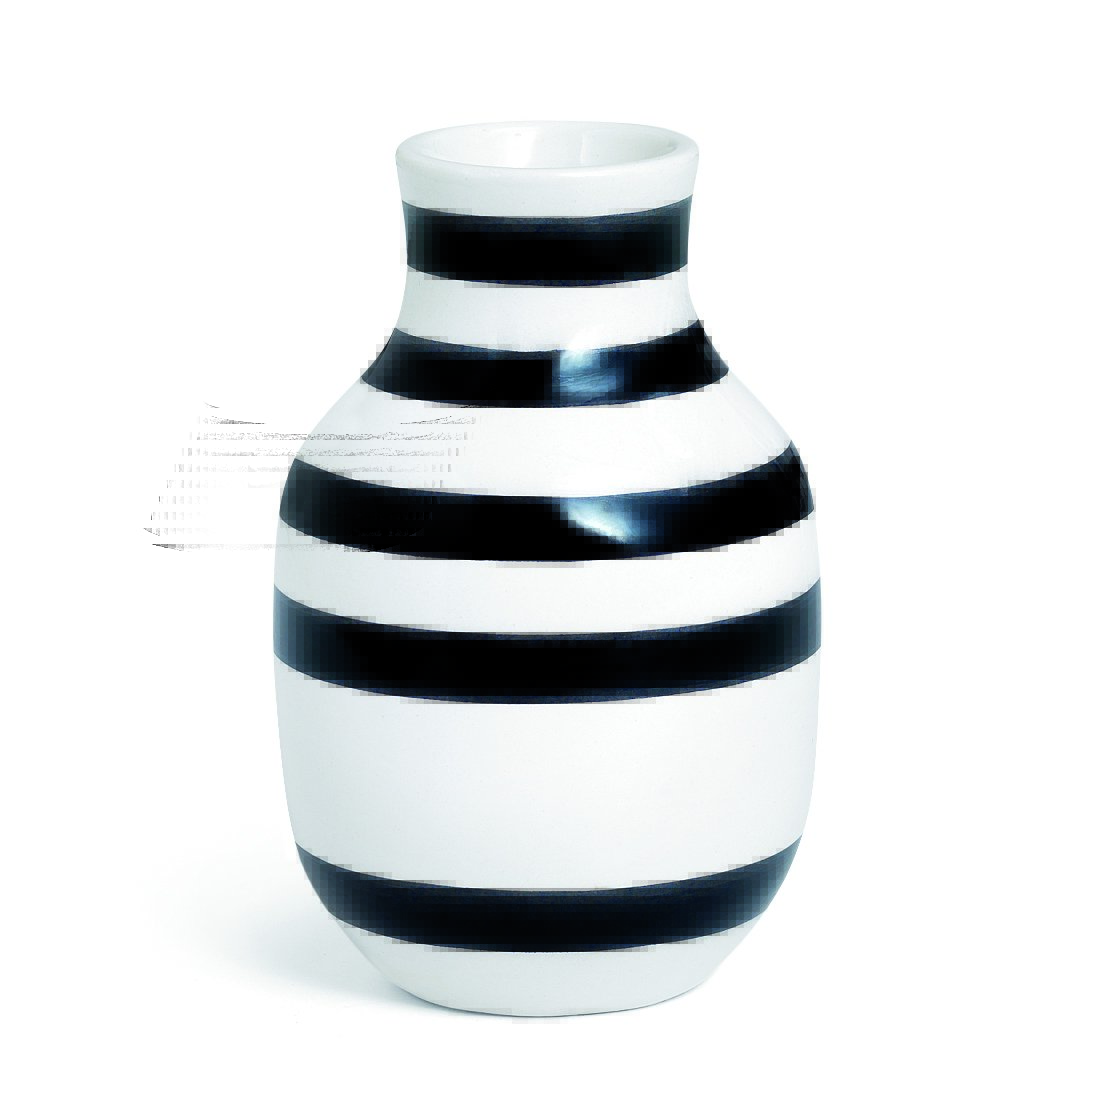 Bilde av Kähler Omaggio vase liten svart